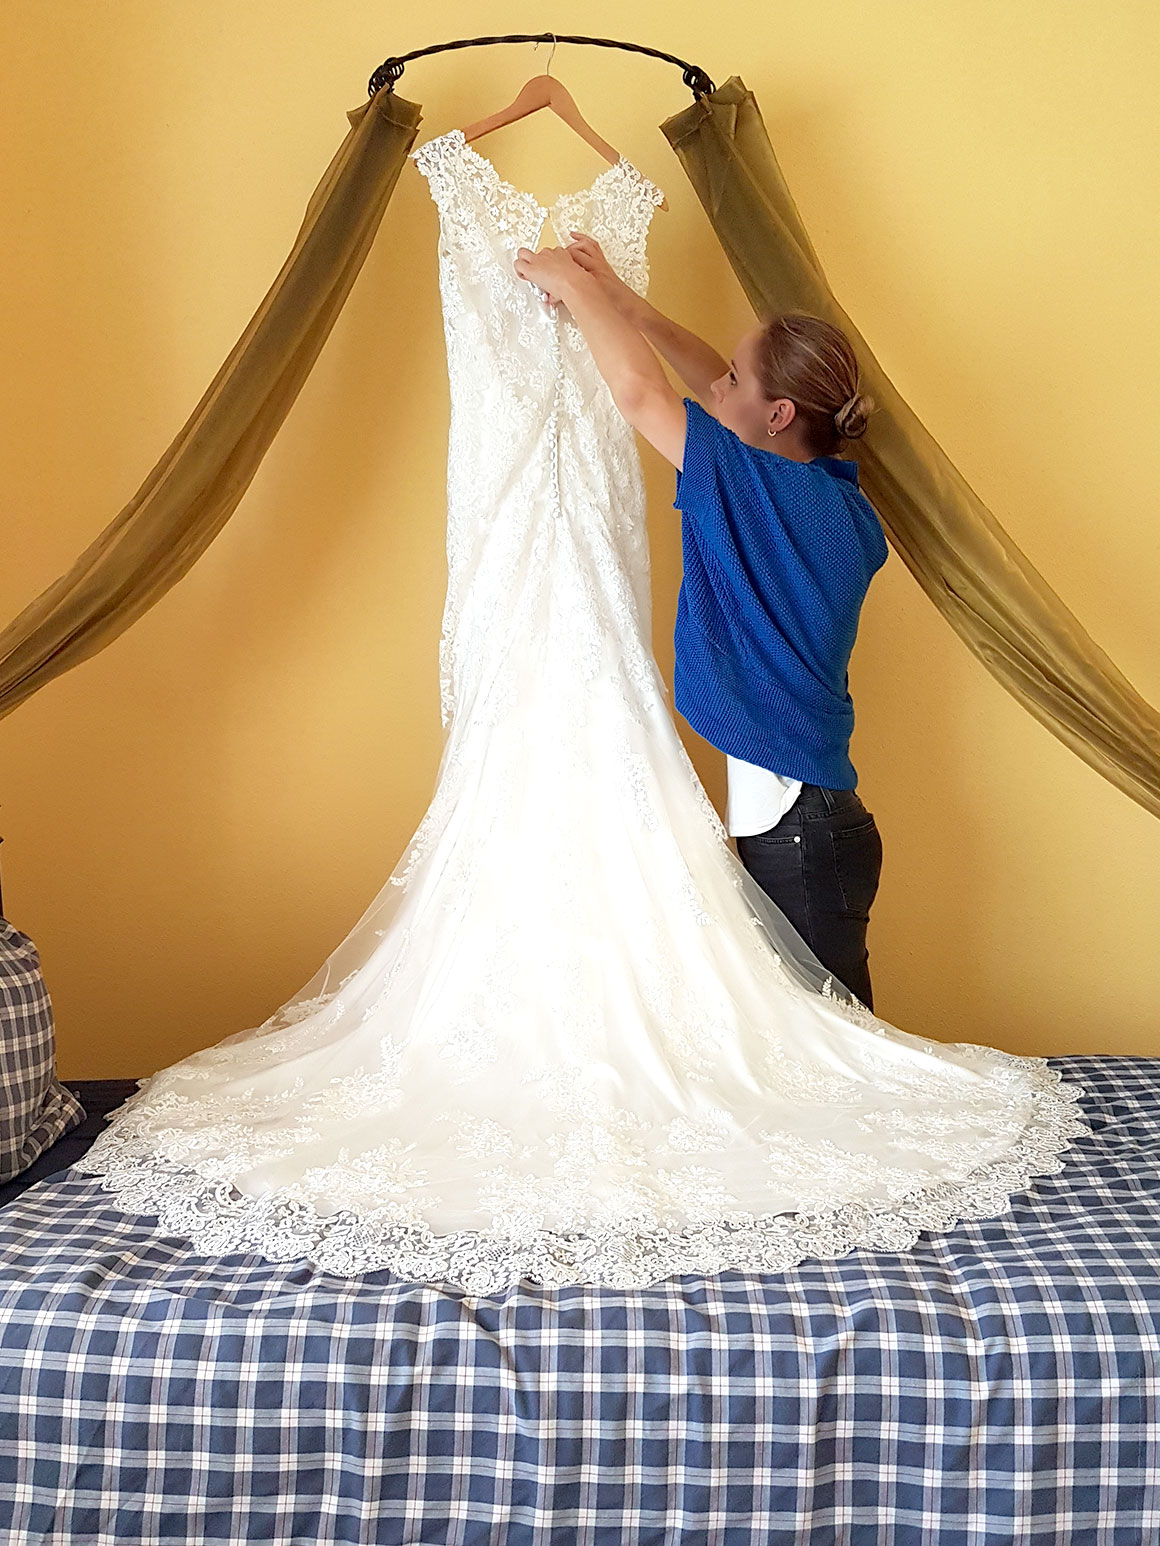 Onze bruiloft: Mijn trouwjurk